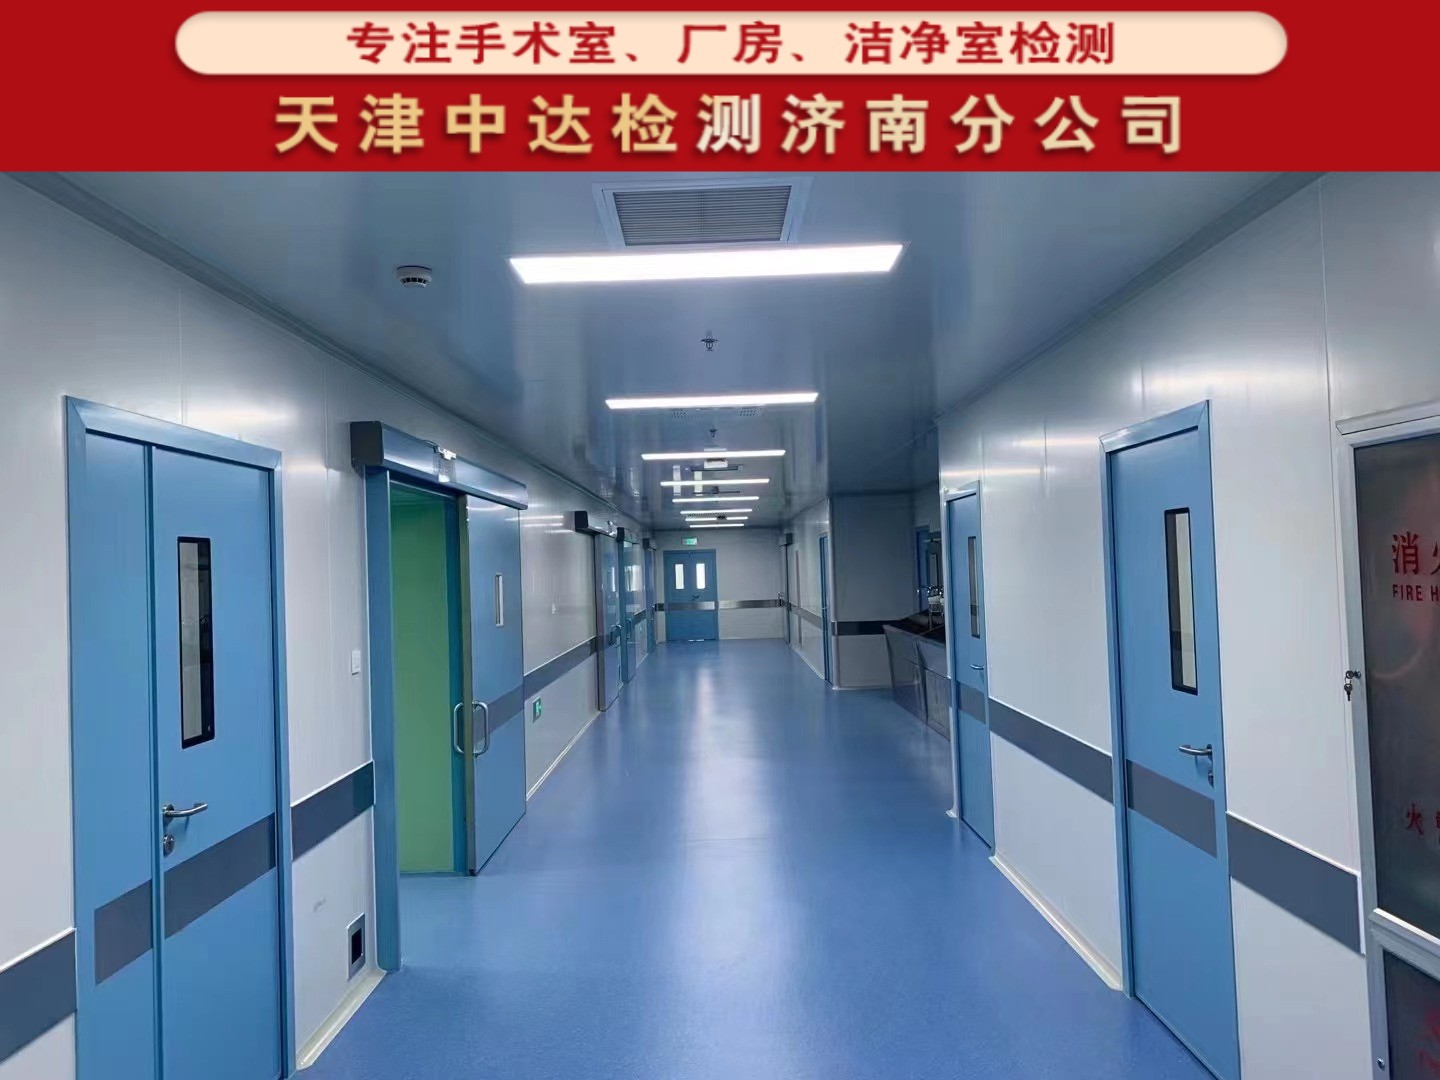 青岛胶州市无菌手术室净化检测机构-天津中达检测济南分公司